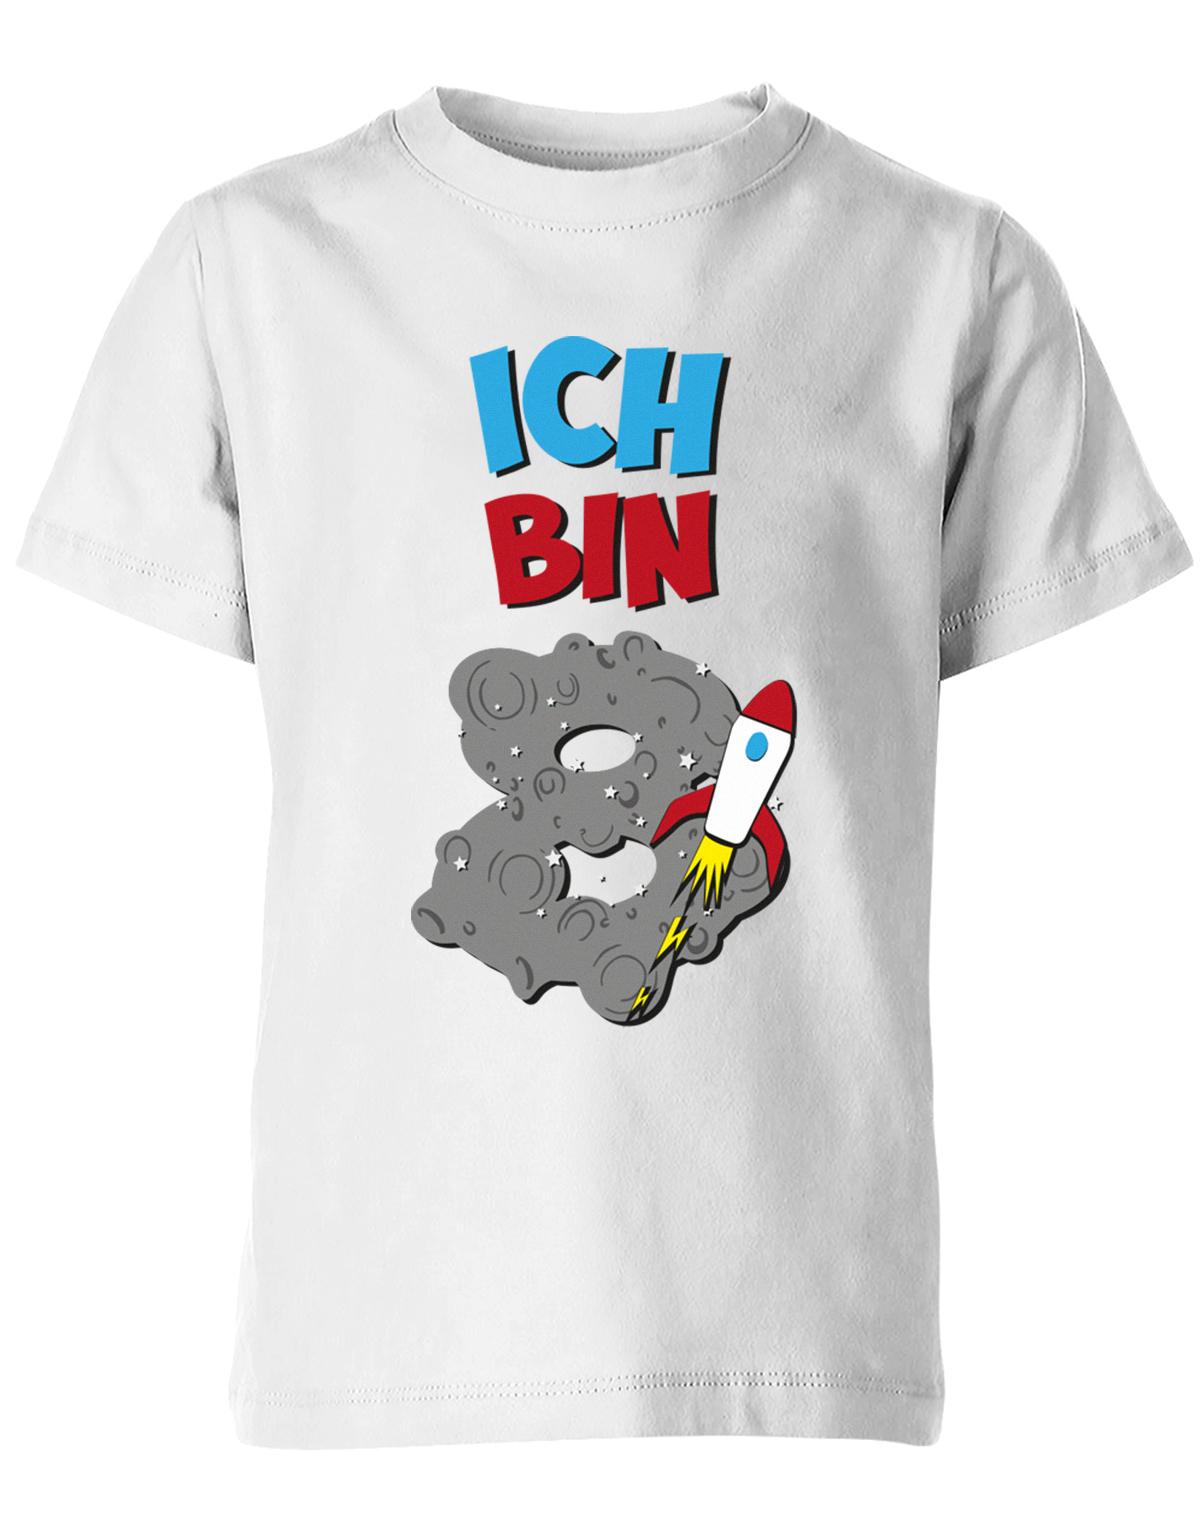 ich-bin-8-weltraum-rakete-planet-geburtstag-kinder-shirt-weiss